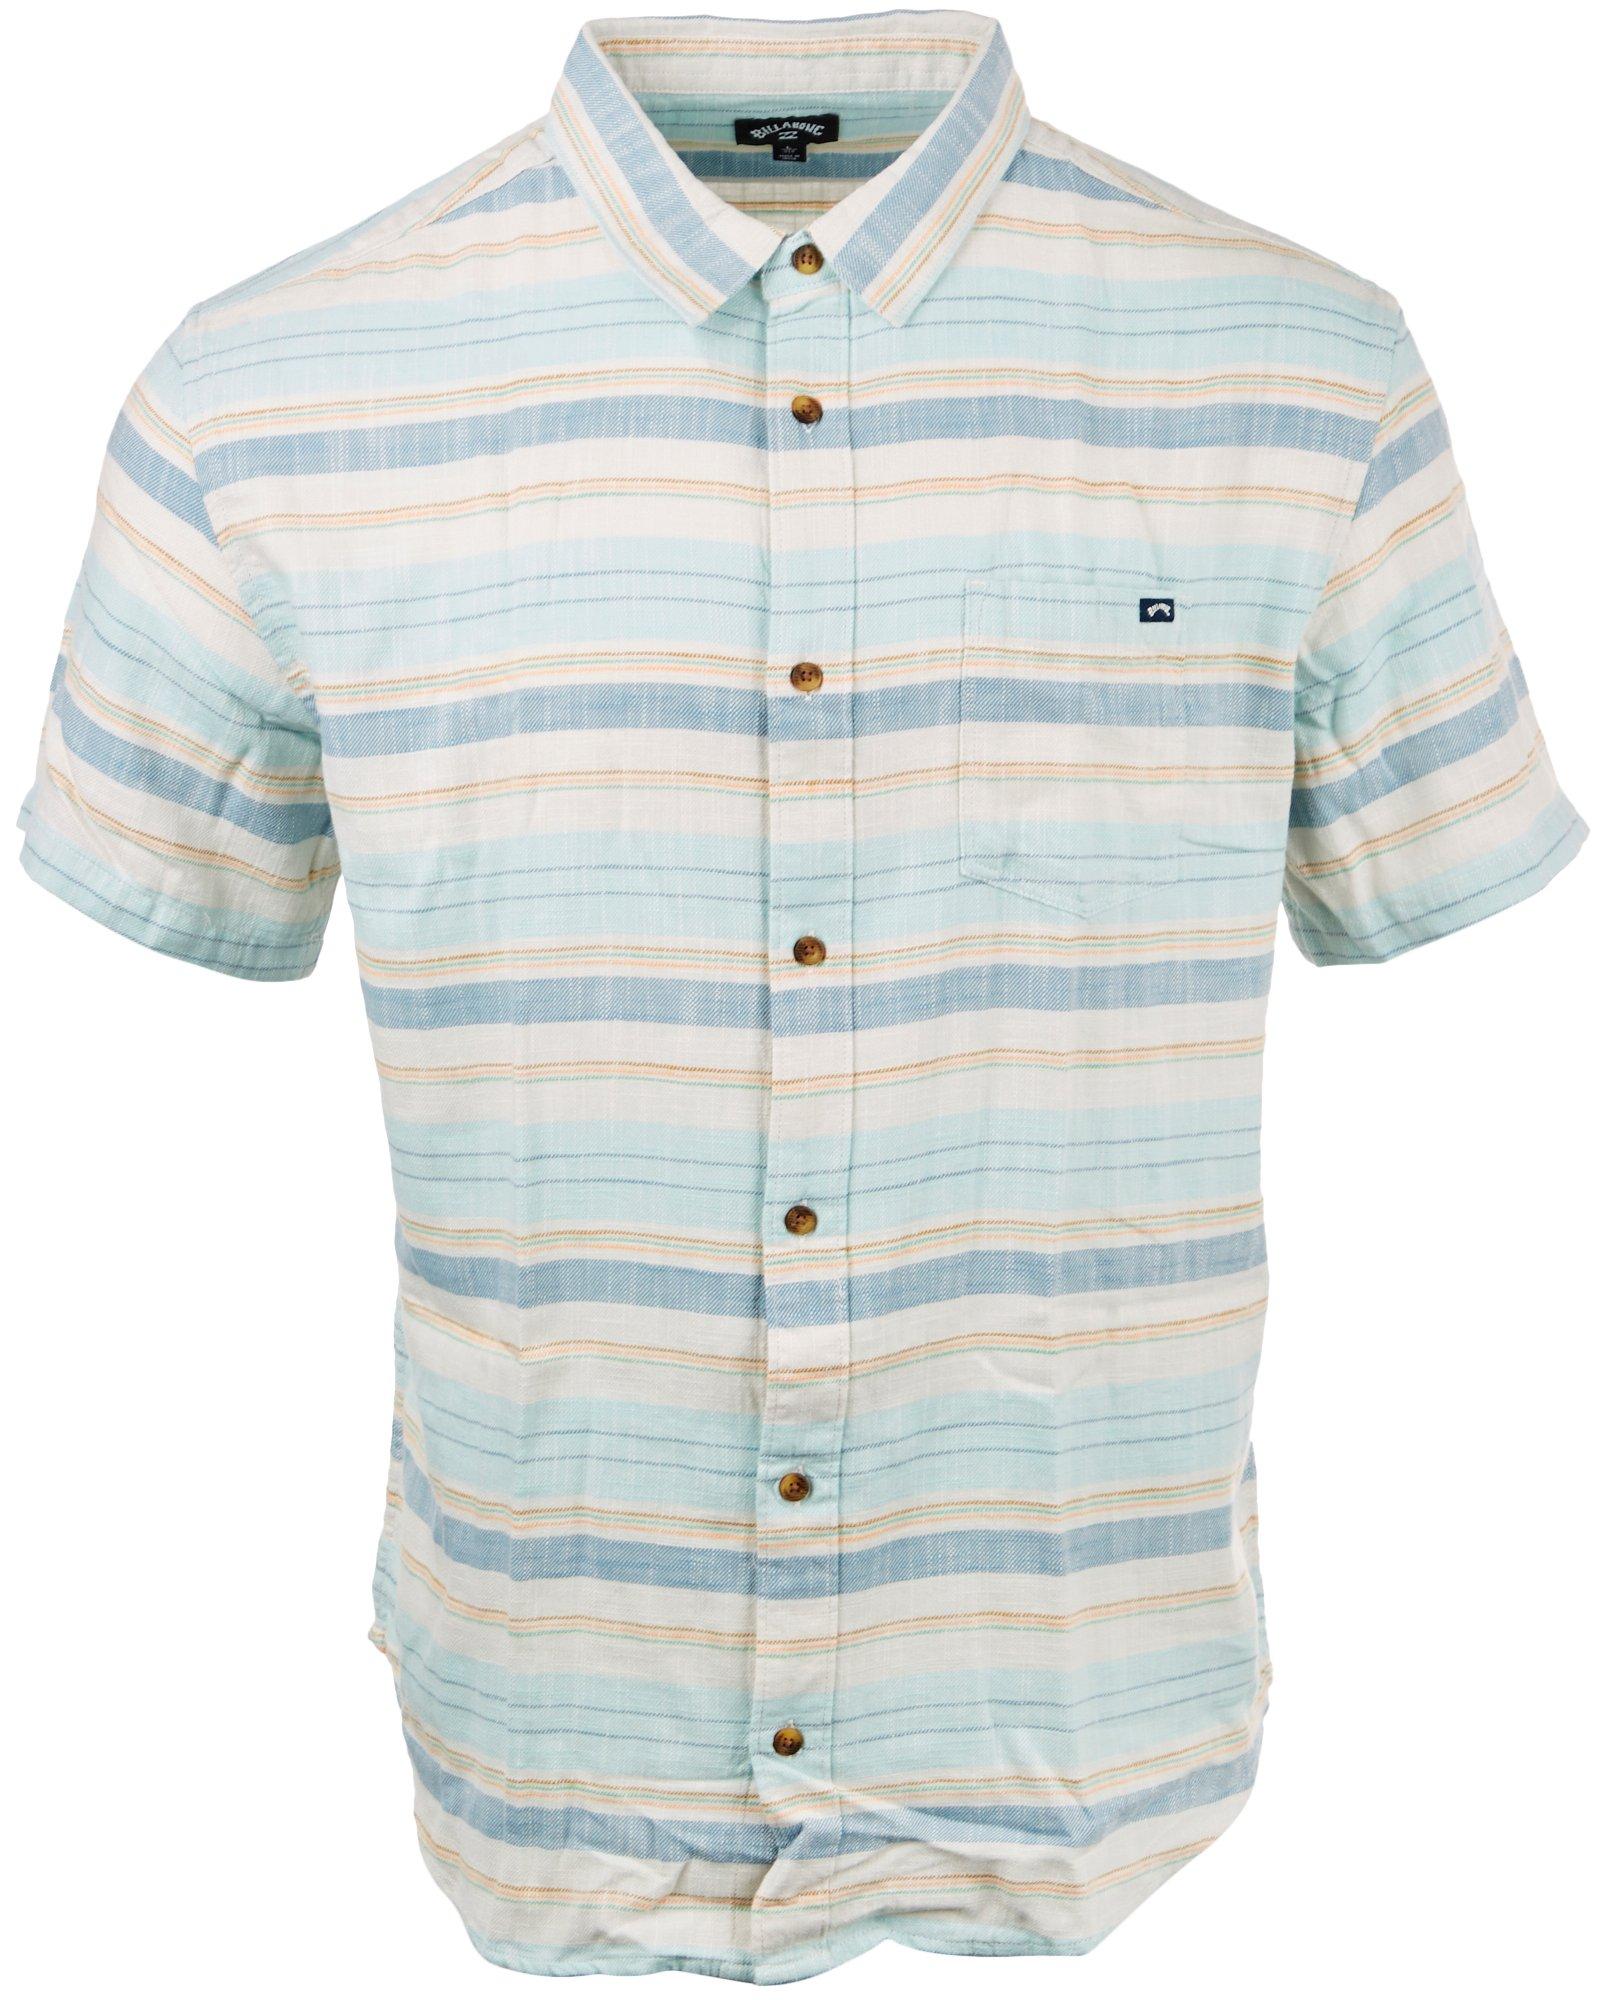 Billabong Mens All Day Stripe Short Sleeve Button-Up Shirt